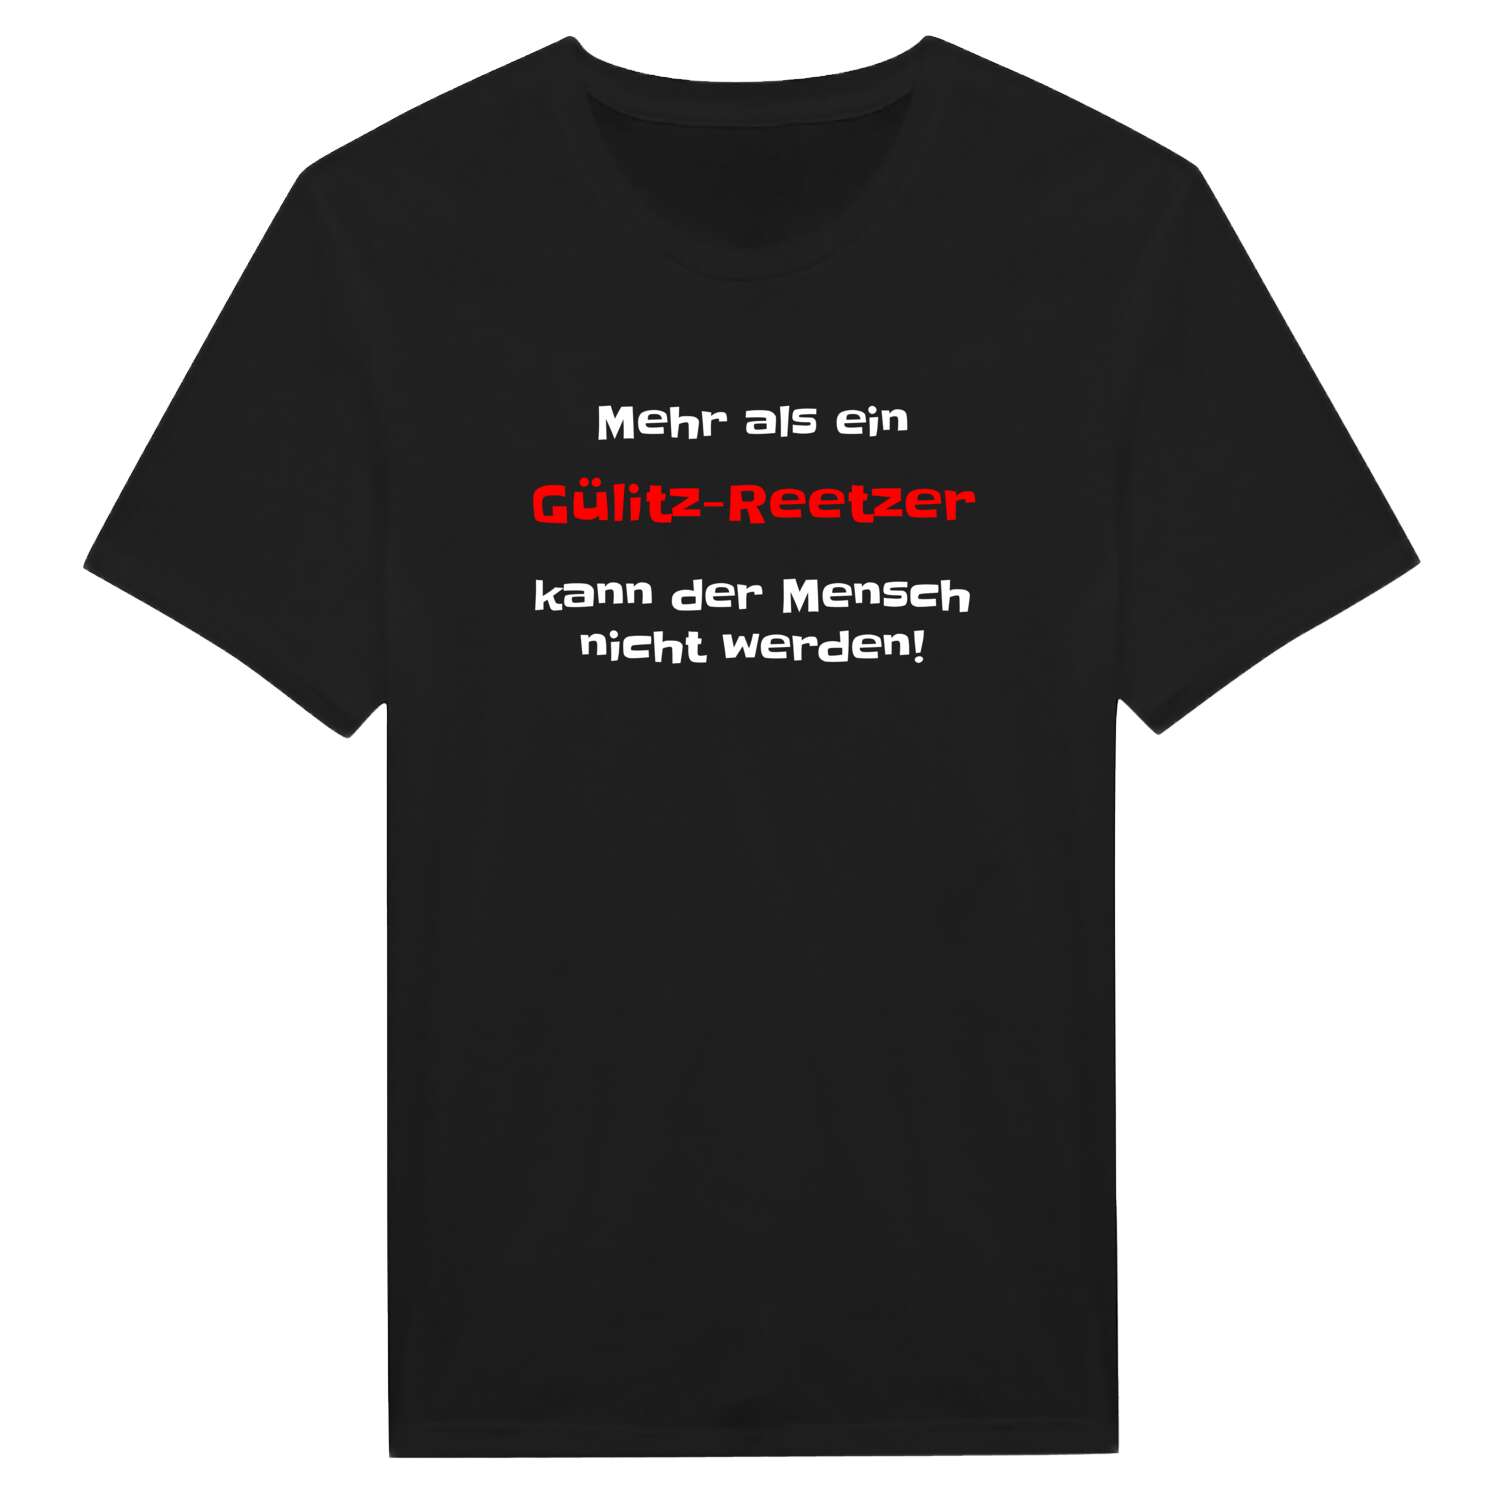 Gülitz-Reetz T-Shirt »Mehr als ein«